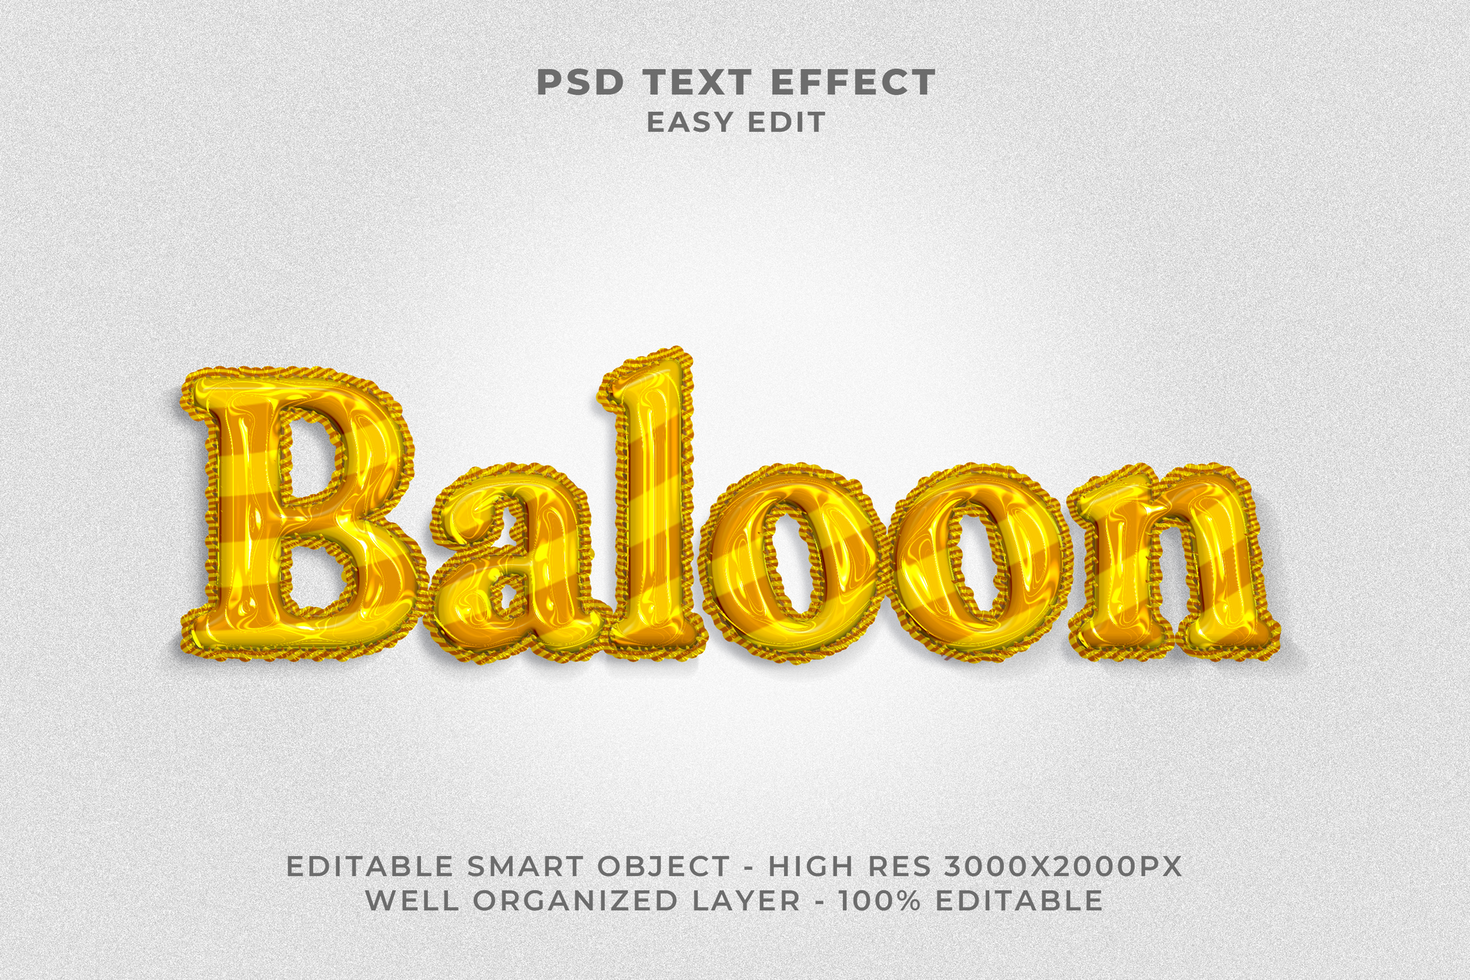 Balloon Text Effect PSD